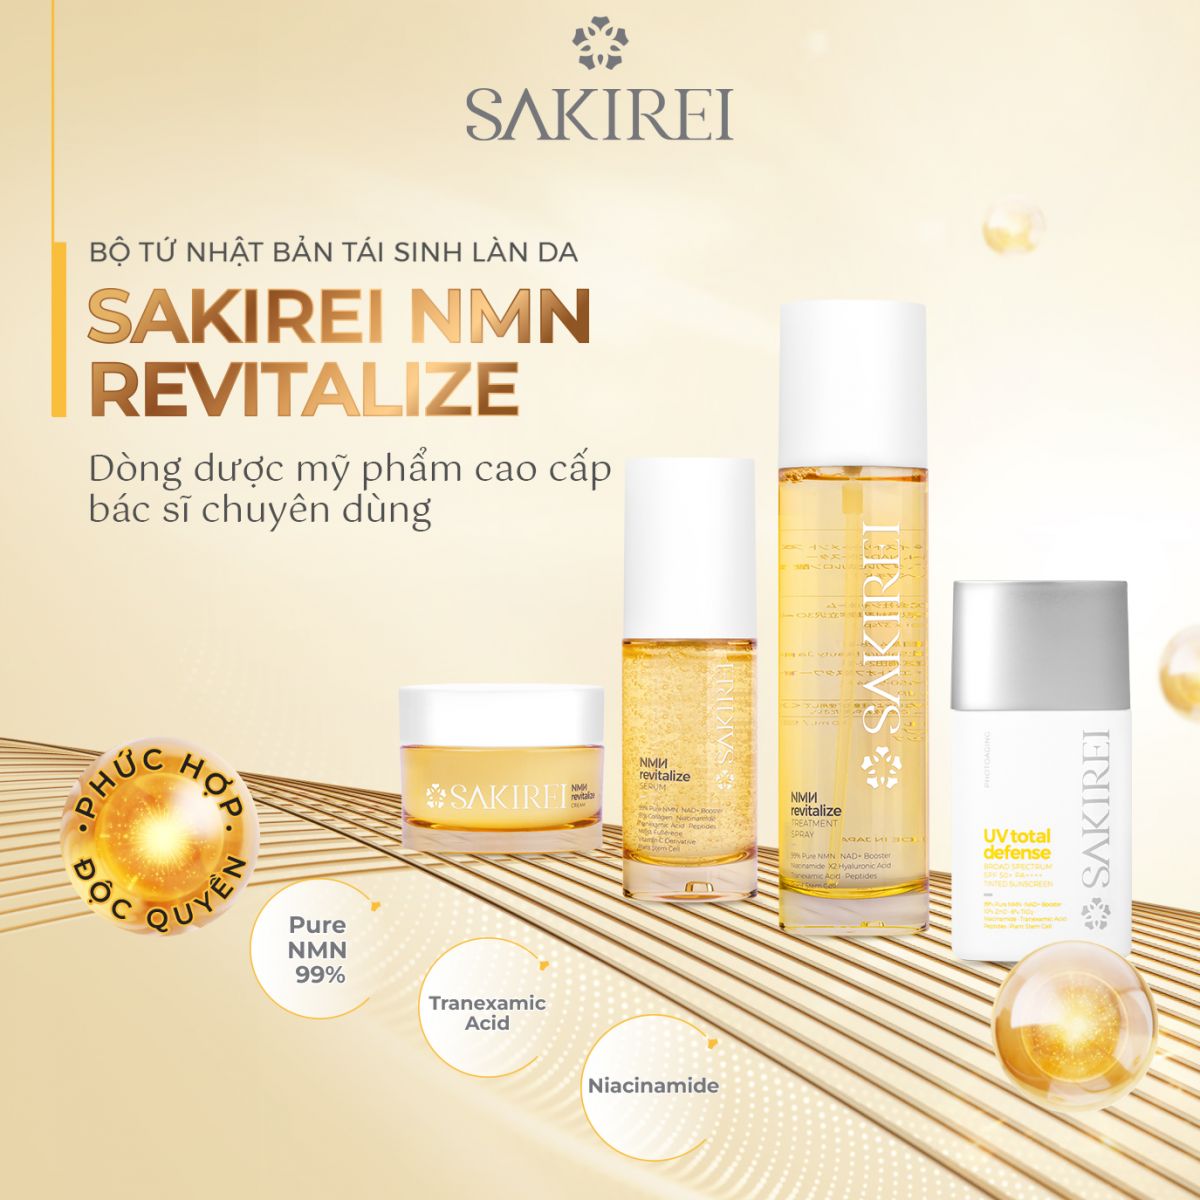 Sakirei NMN Revitalize là bộ sản phẩm phục hồi da đầu tiên chứa tại thị trường Việt Nam. Bộ sản phẩm gồm 4 bước chăm sóc da cơ bản nhưng thiết yếu cho làn da trước và sau điều trị. 